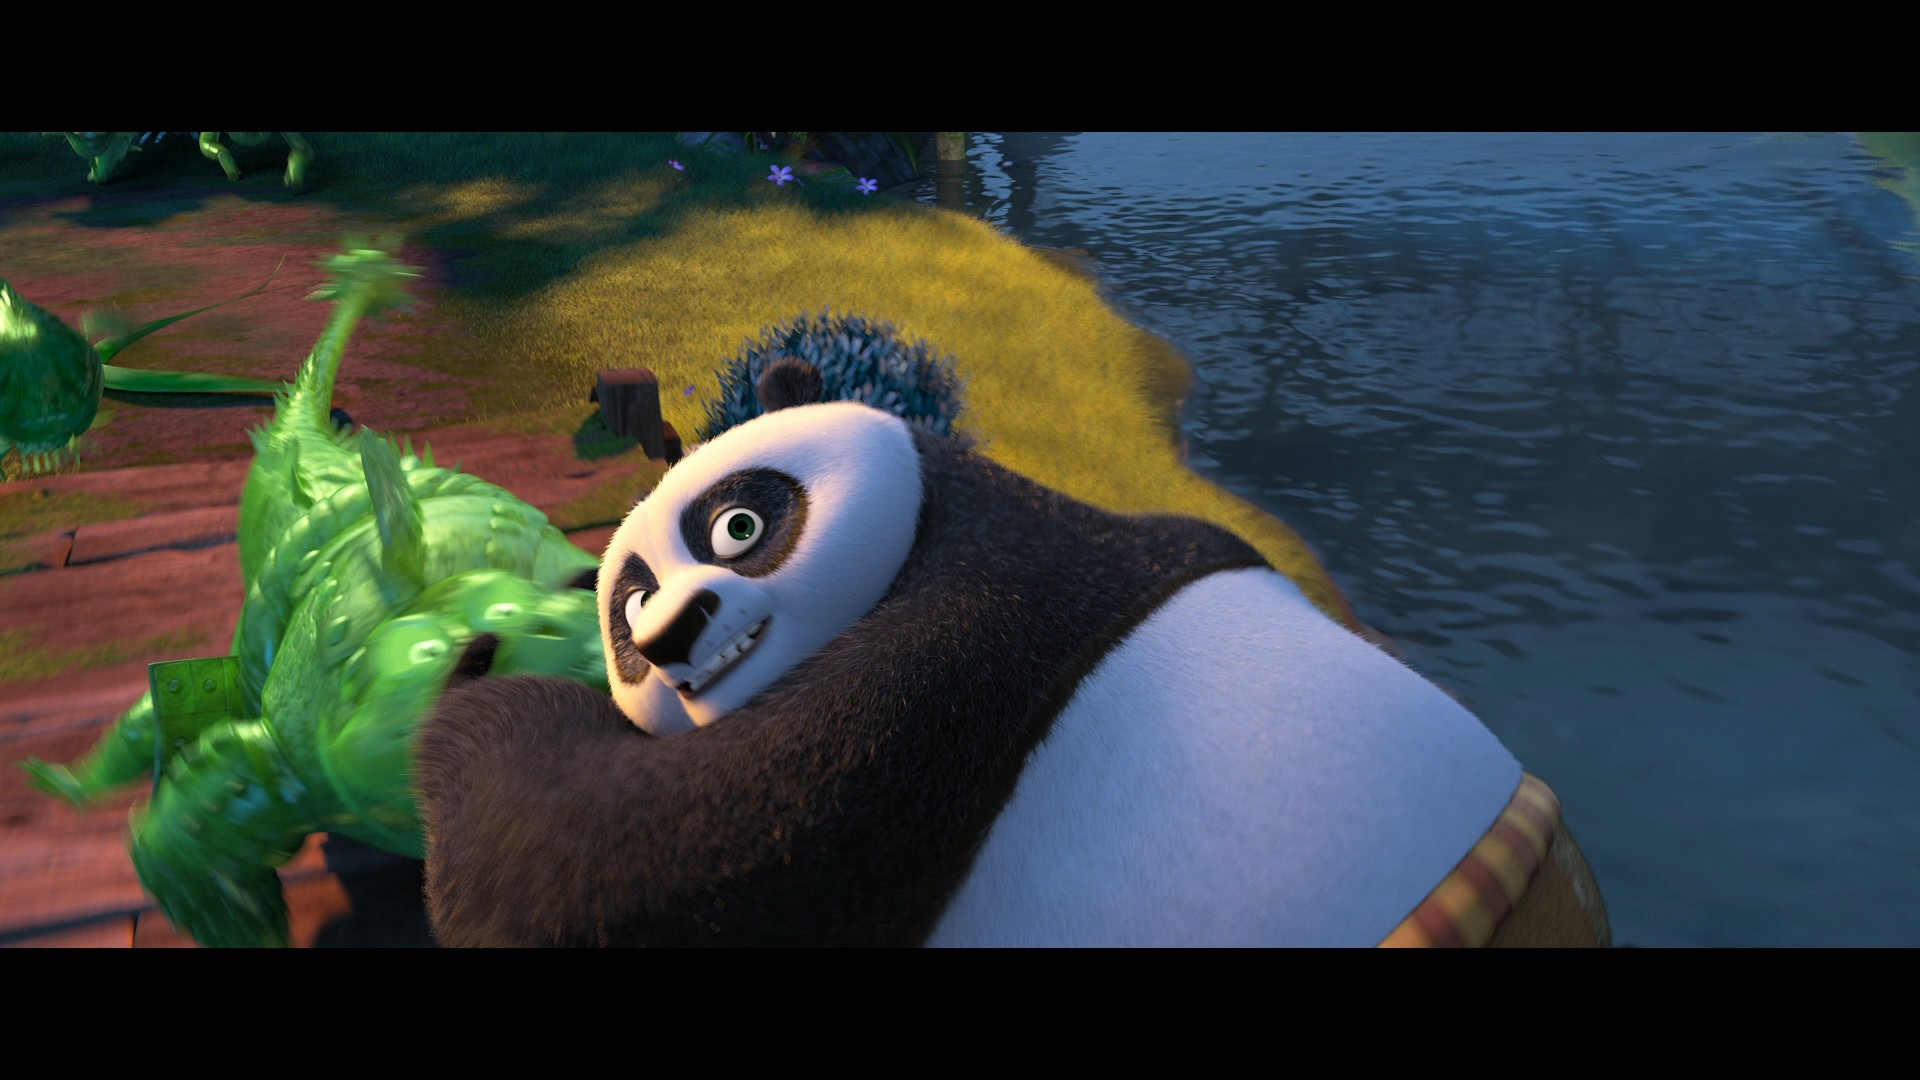 [功夫熊猫3].Kung.Fu.Panda.3.2016.HK.3D.BluRay.1080p.AVC.DTS-HD.MA.7.1-TTG   37.03G-11.jpg